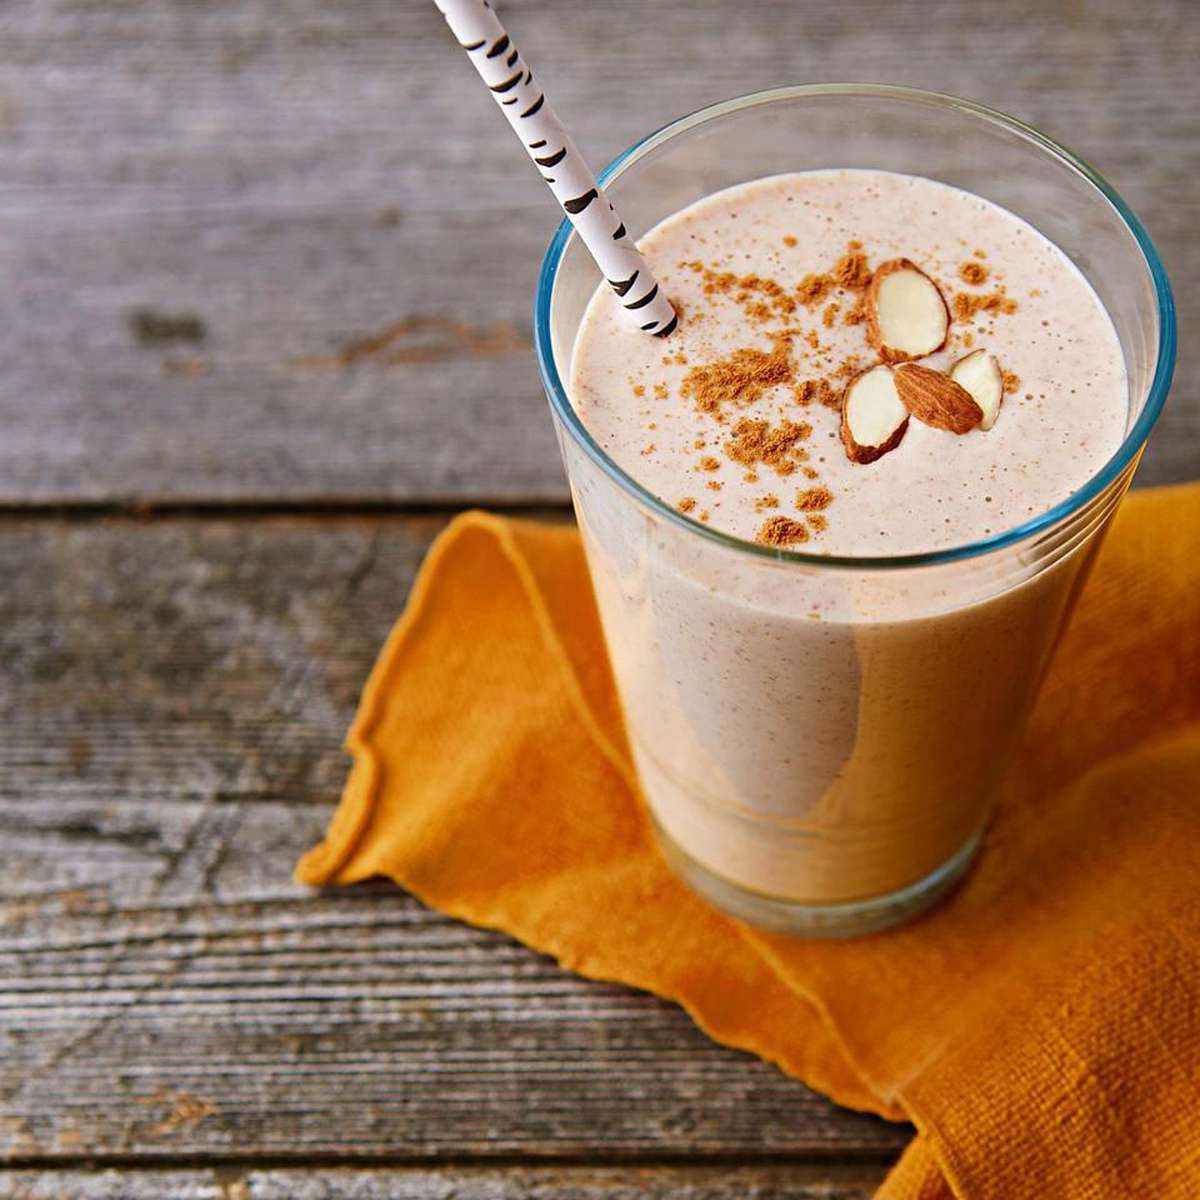 Os shakes de proteína são bons para perder peso?  Aqui está o que um nutricionista diz